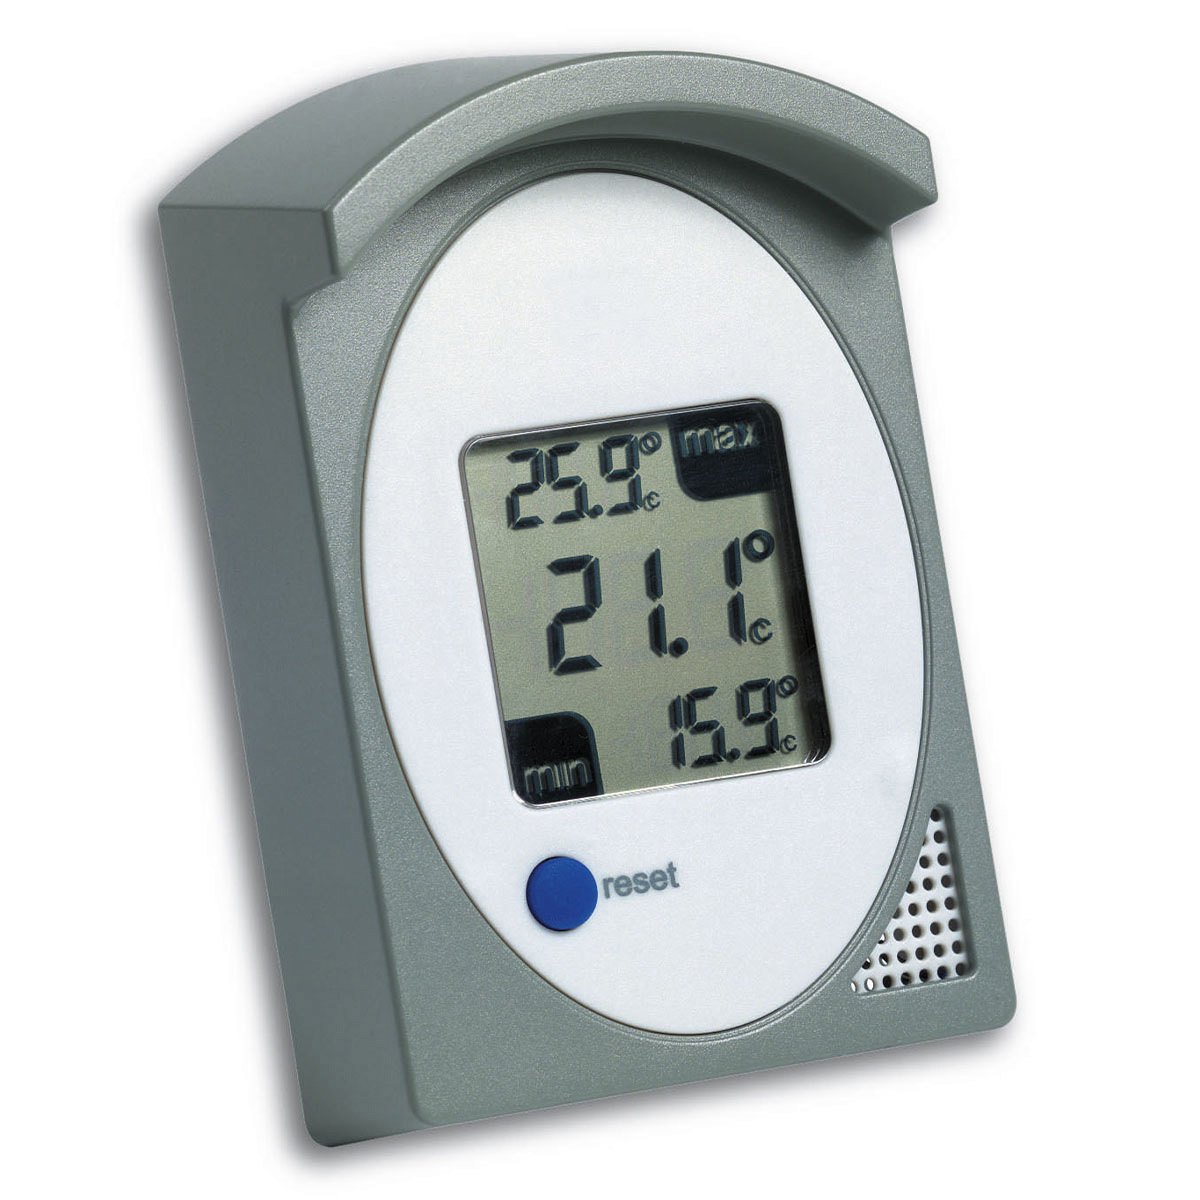 30-1017-10-digitales-thermometer-innen-aussen-1200x1200px.jpg